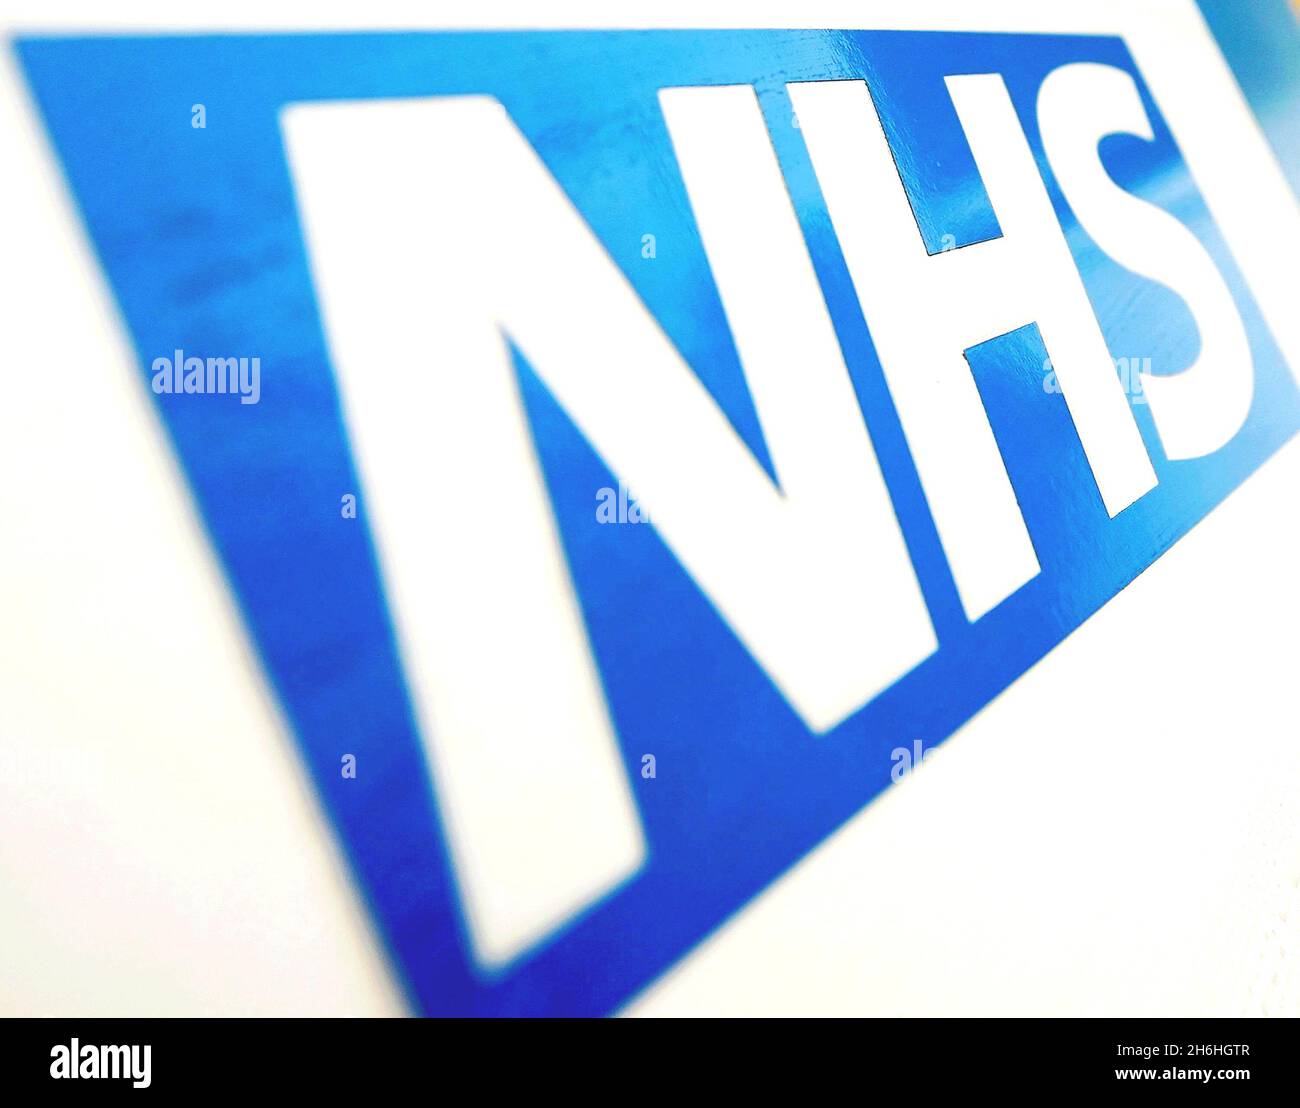 Photo du dossier datée du 06/11/10 du logo NHS.Les patients de l'hôpital ont attendu jusqu'à 12 ou 13 heures pour un lit dans un « grand nombre » d'admissions.Date de publication : le mardi 16 novembre 2021. Banque D'Images